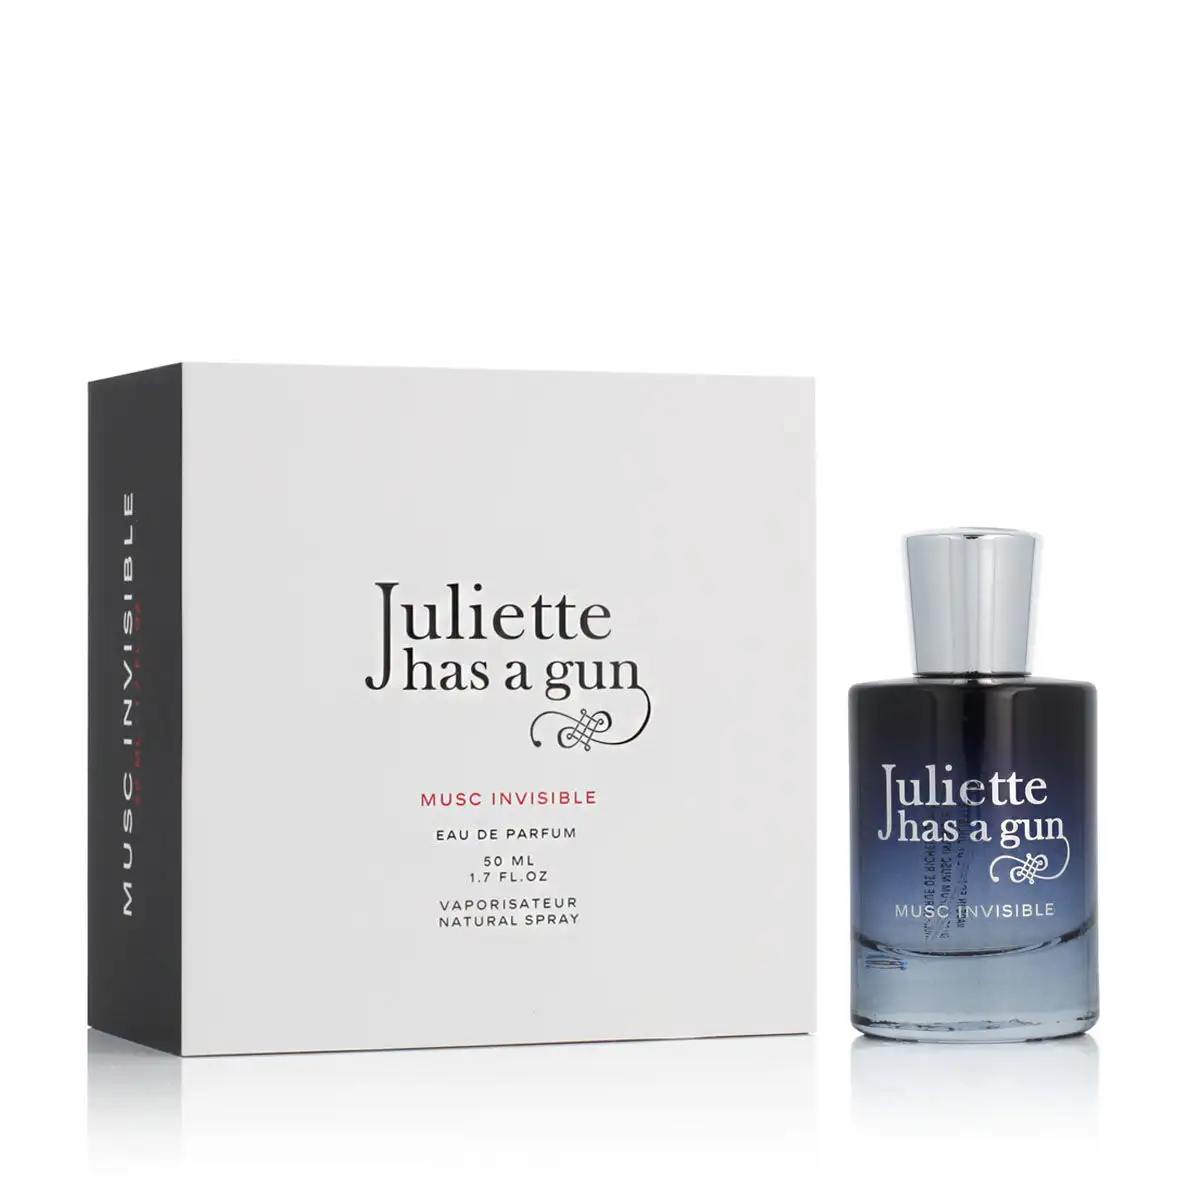 Parfum femme juliette has a gun edp musc invisible 50 ml_9127. DIAYTAR SENEGAL - Votre Destination pour un Shopping Inoubliable. Naviguez à travers notre catalogue et choisissez des produits qui vous marquent par leur originalité.